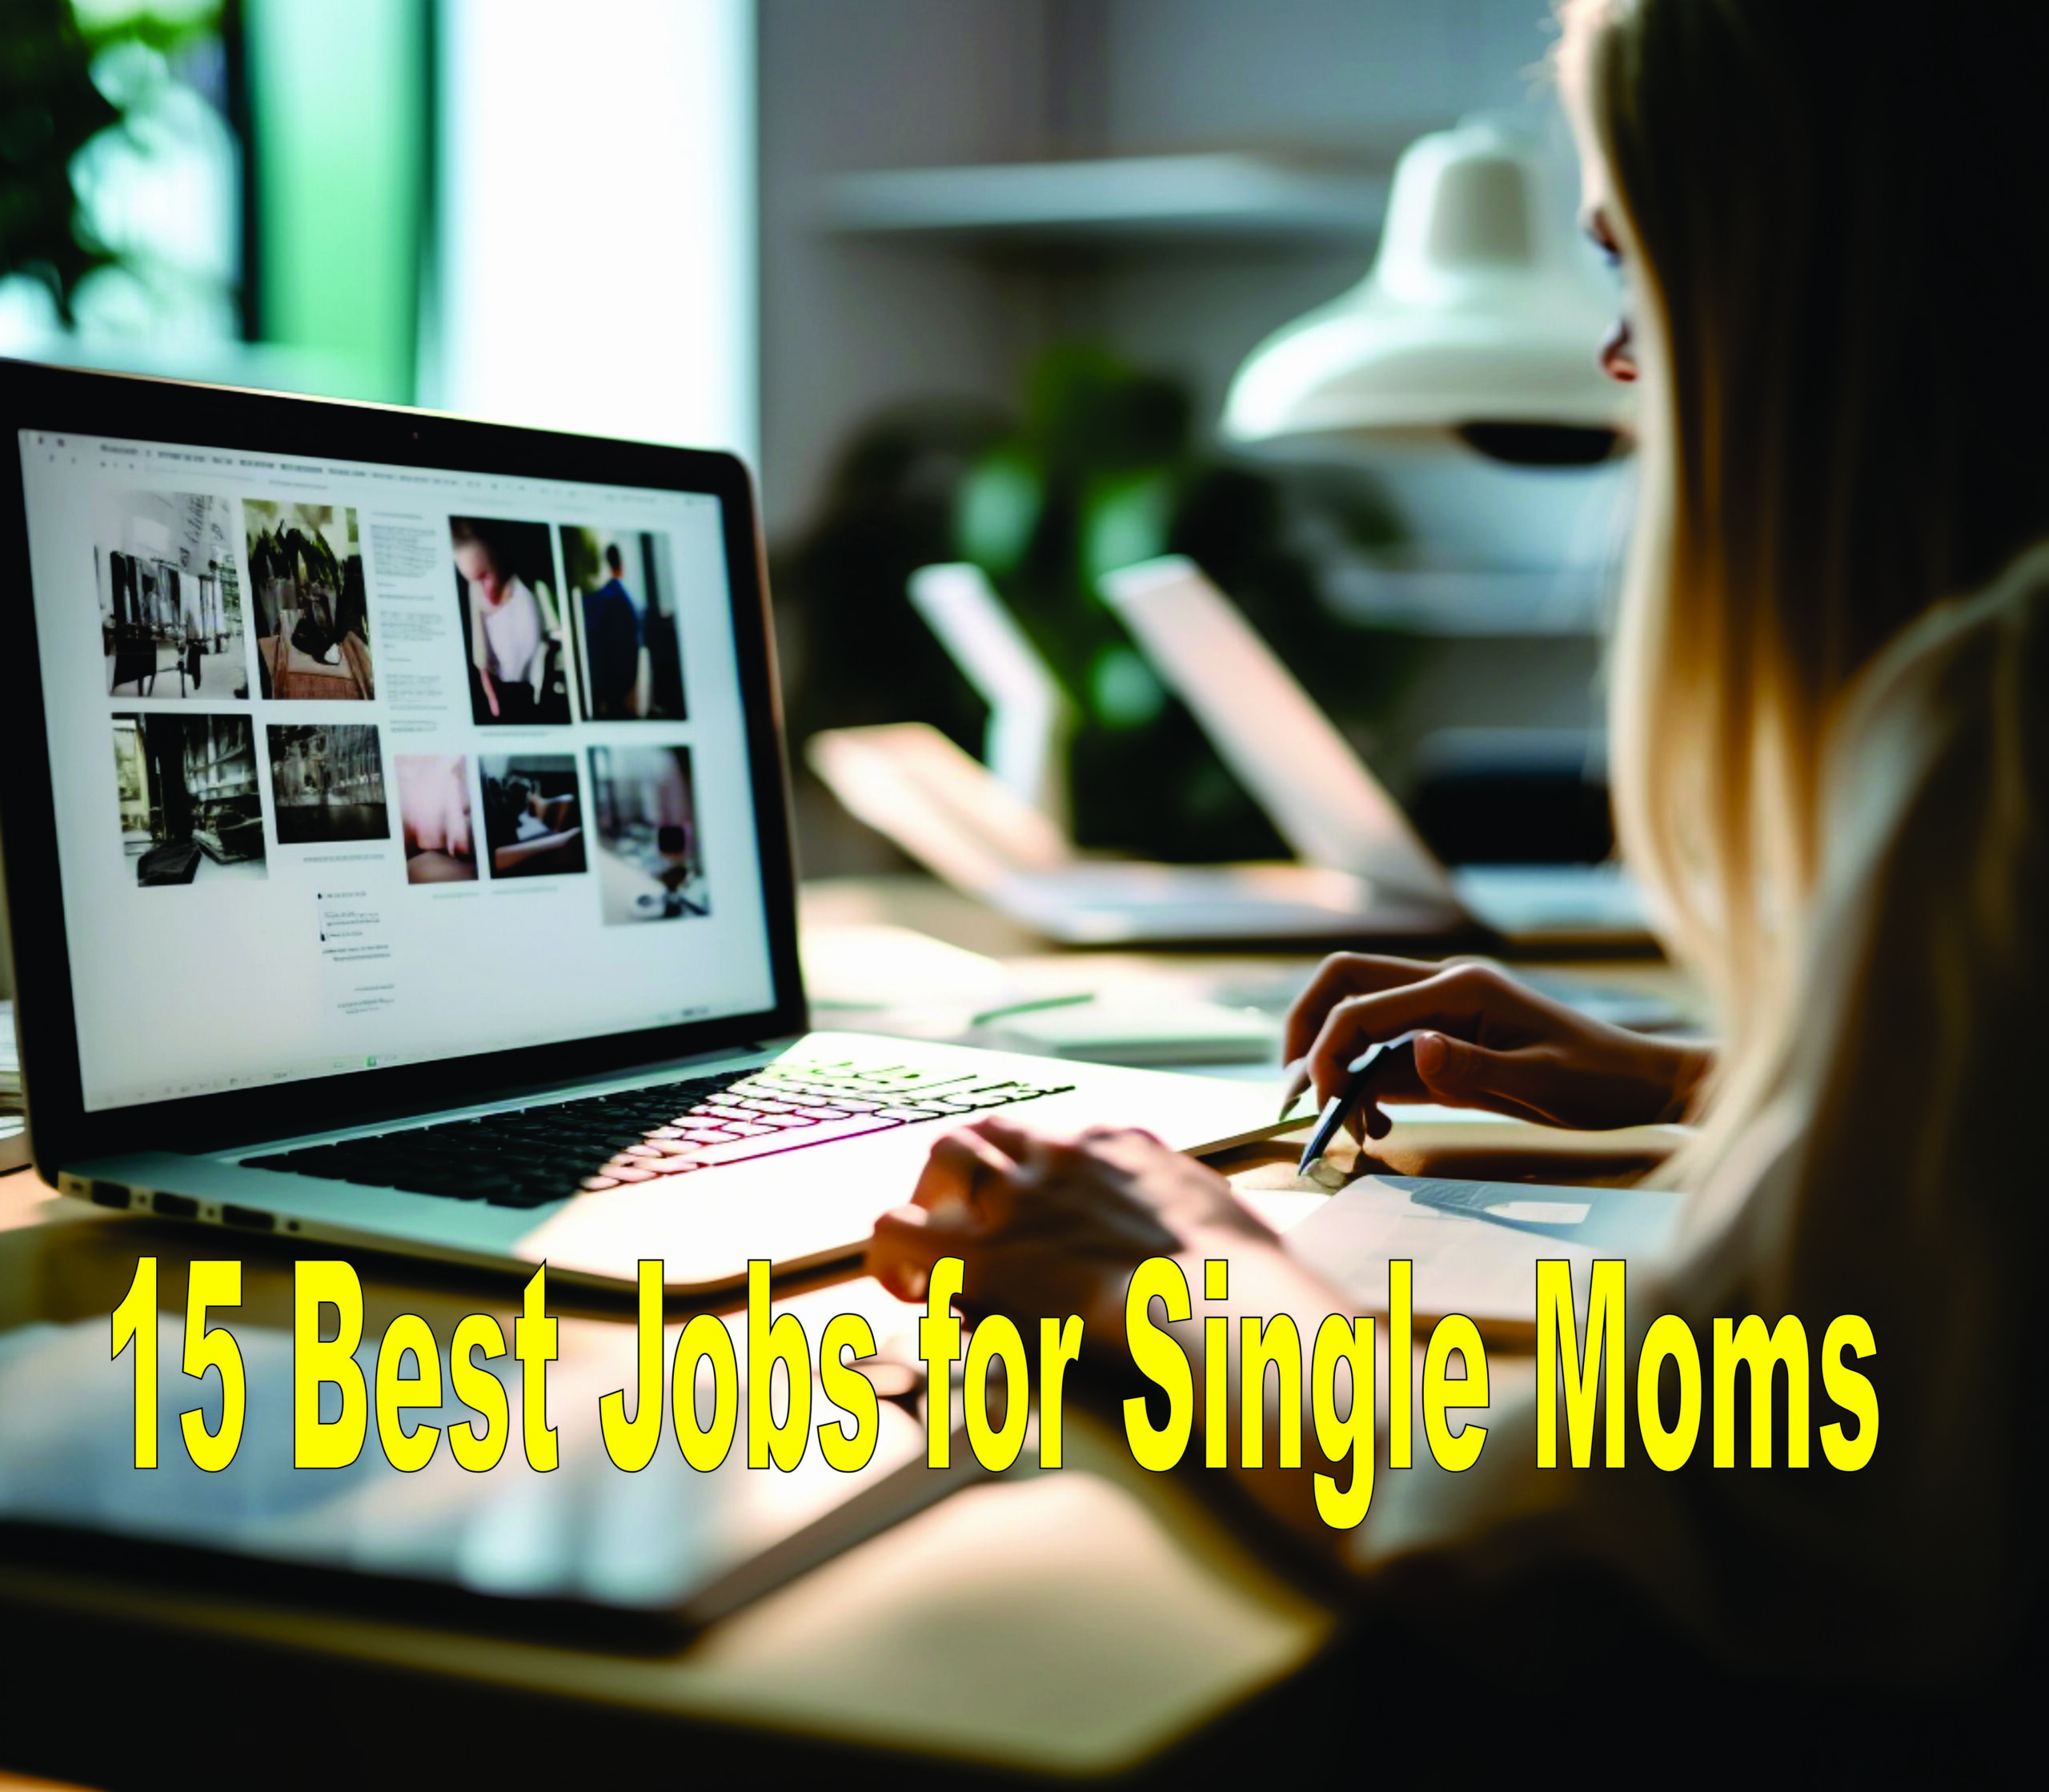 15 Best Jobs For Single Moms